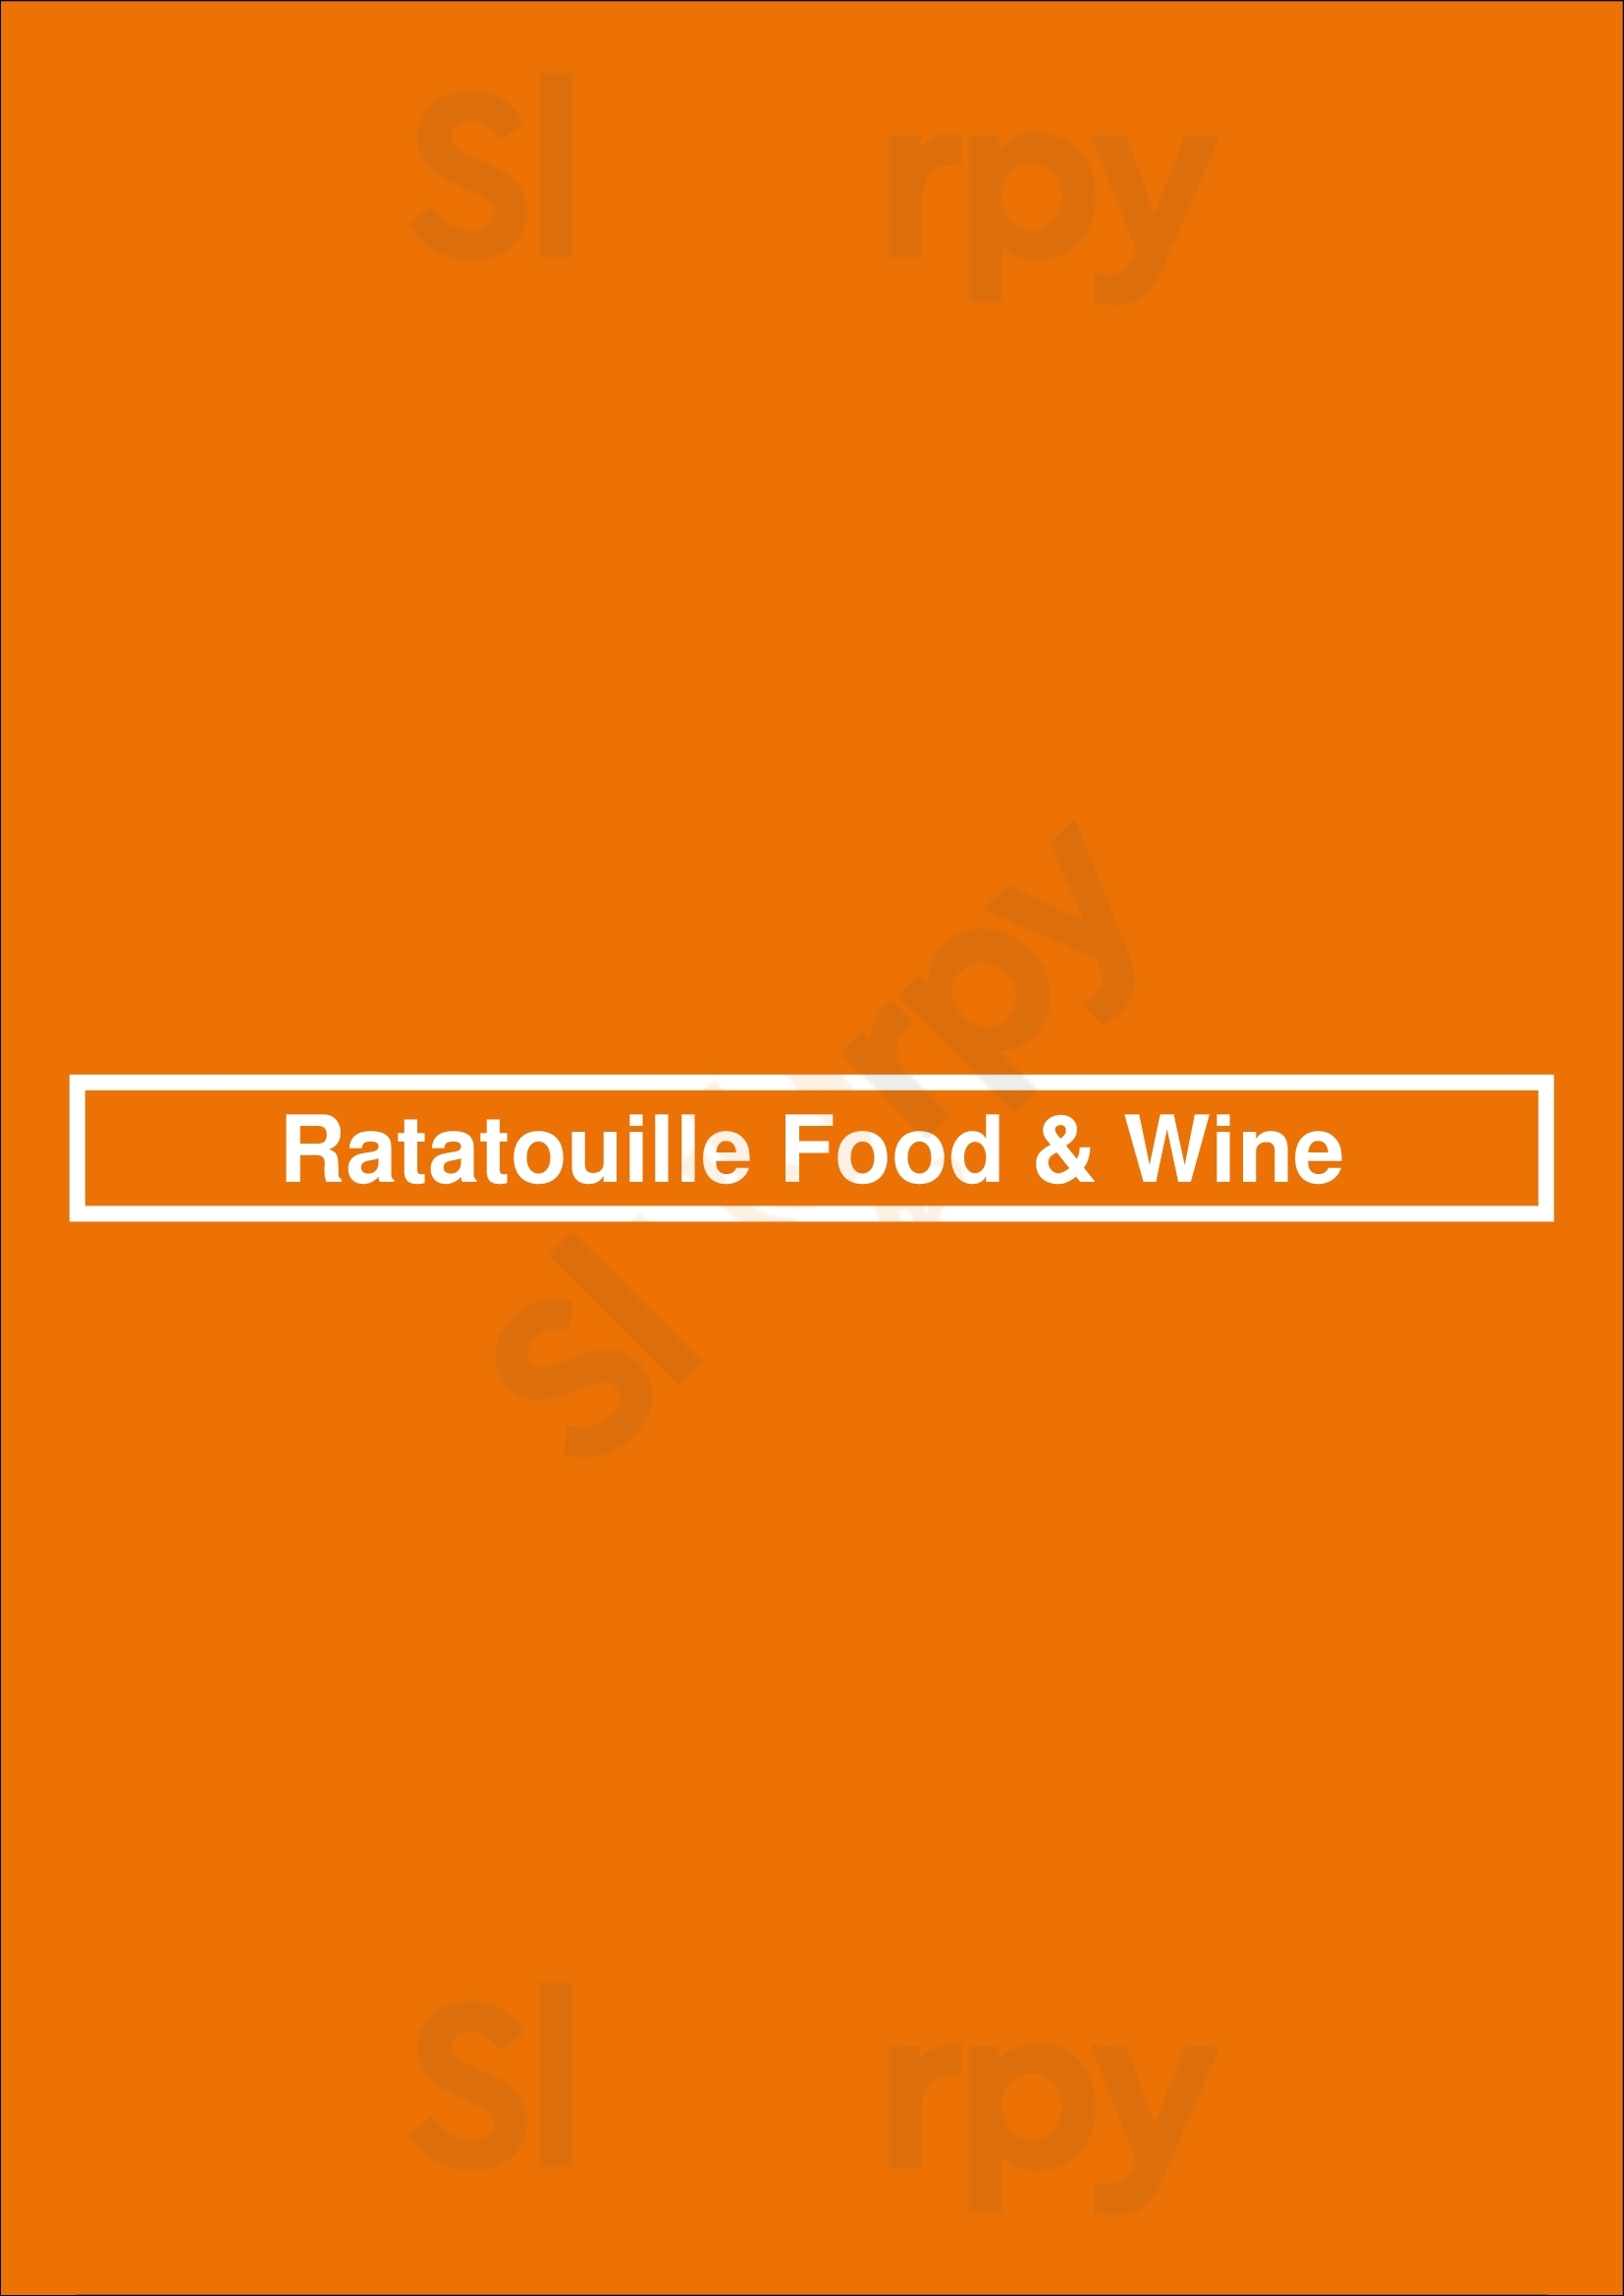 Ratatouille Food & Wine Haarlem Menu - 1